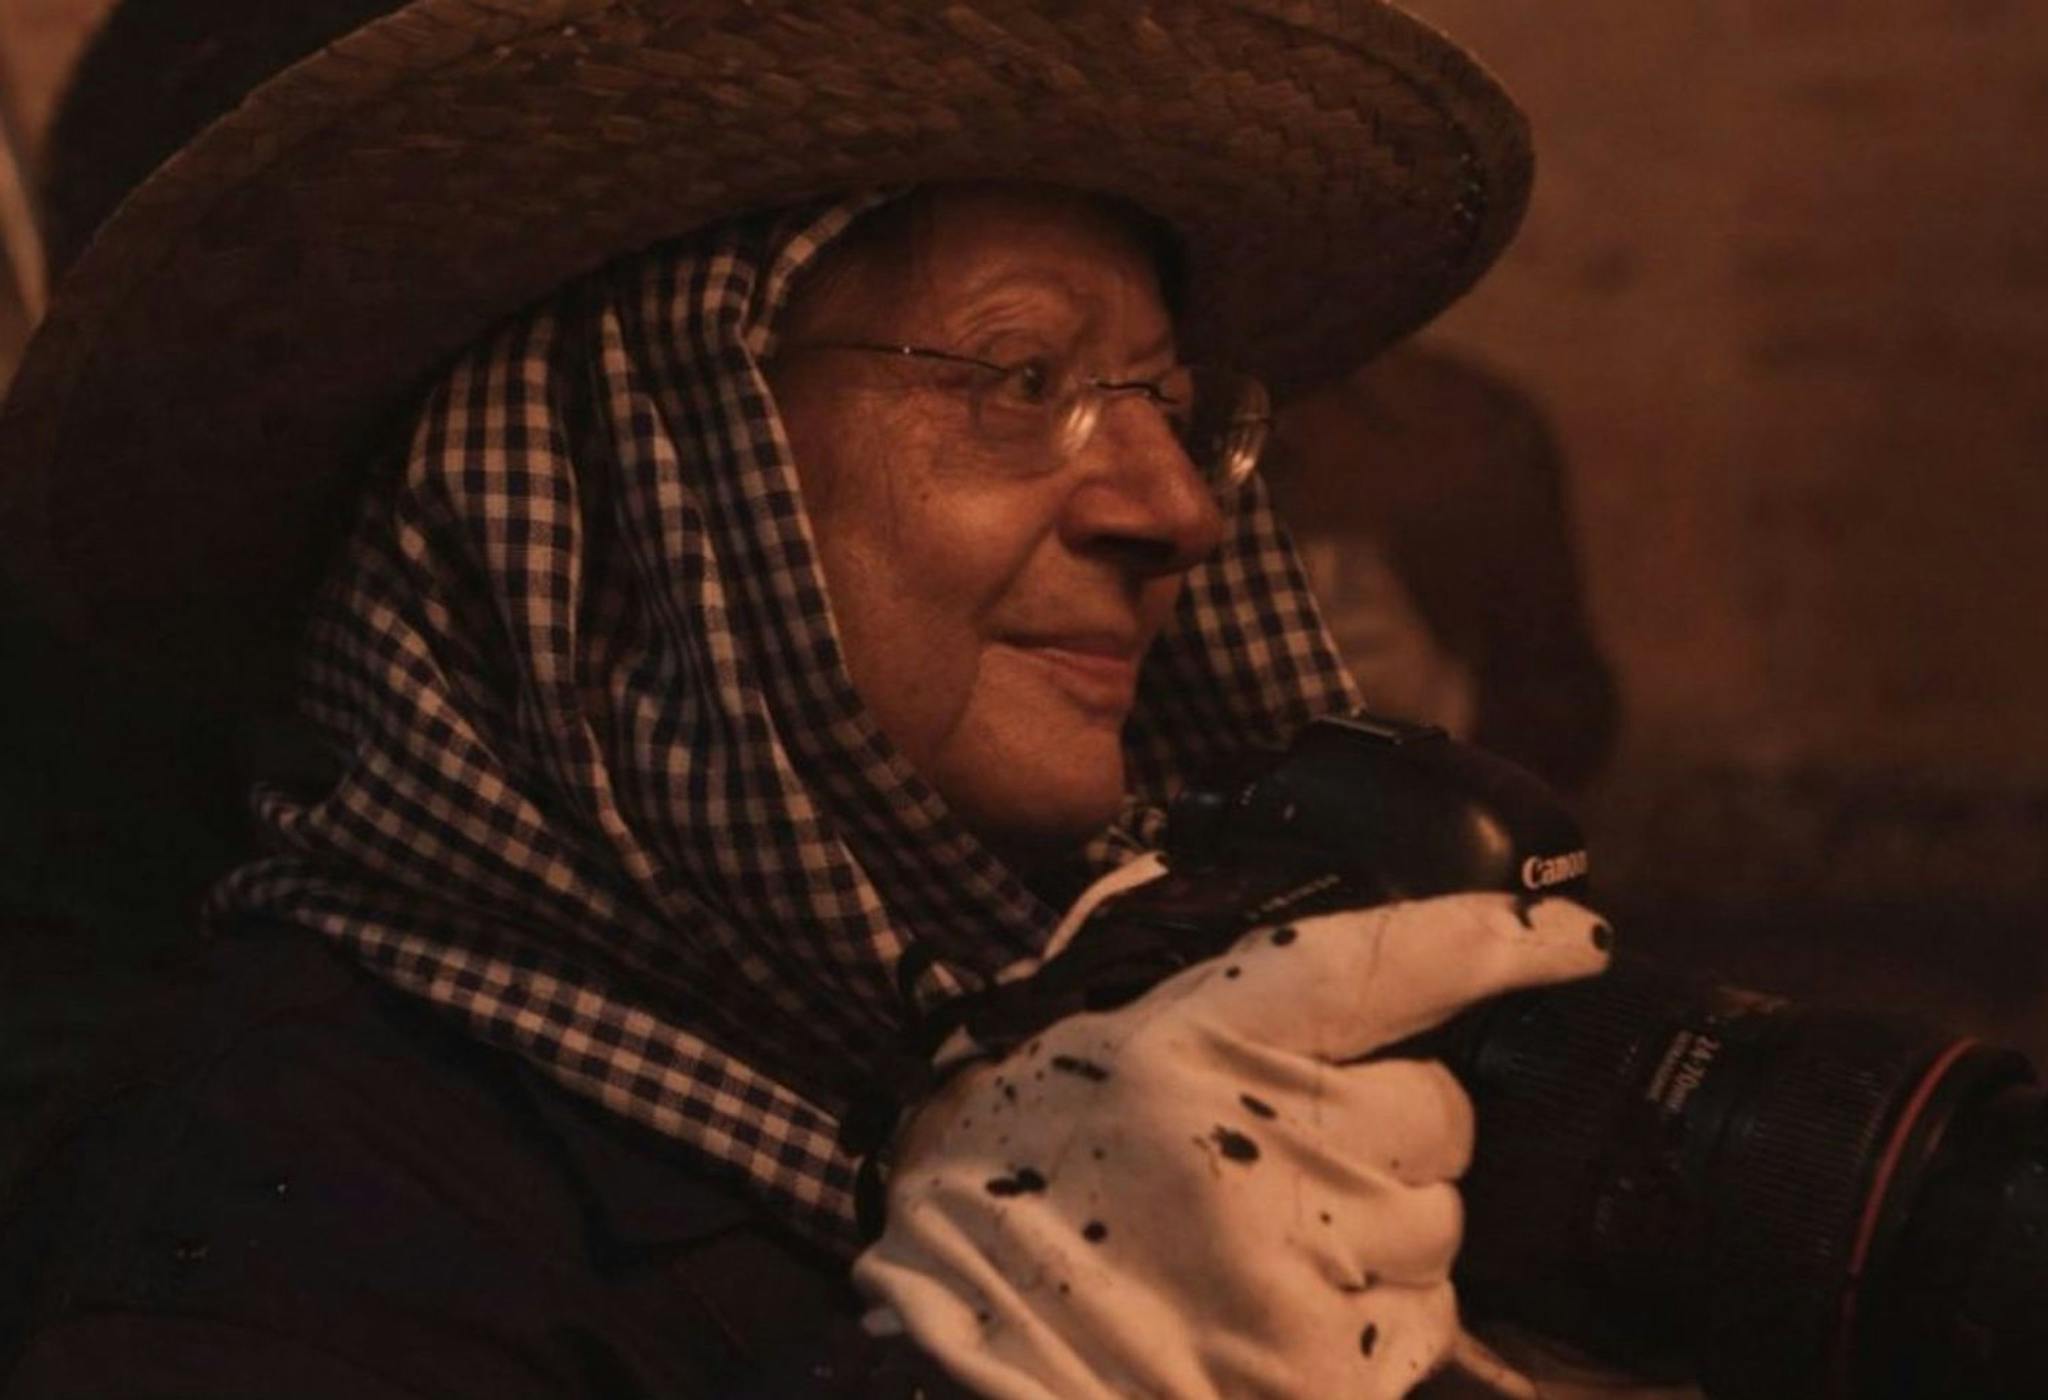 La fotógrafa Cristina García Rodero, protagonista del documental 'La mirada oculta'